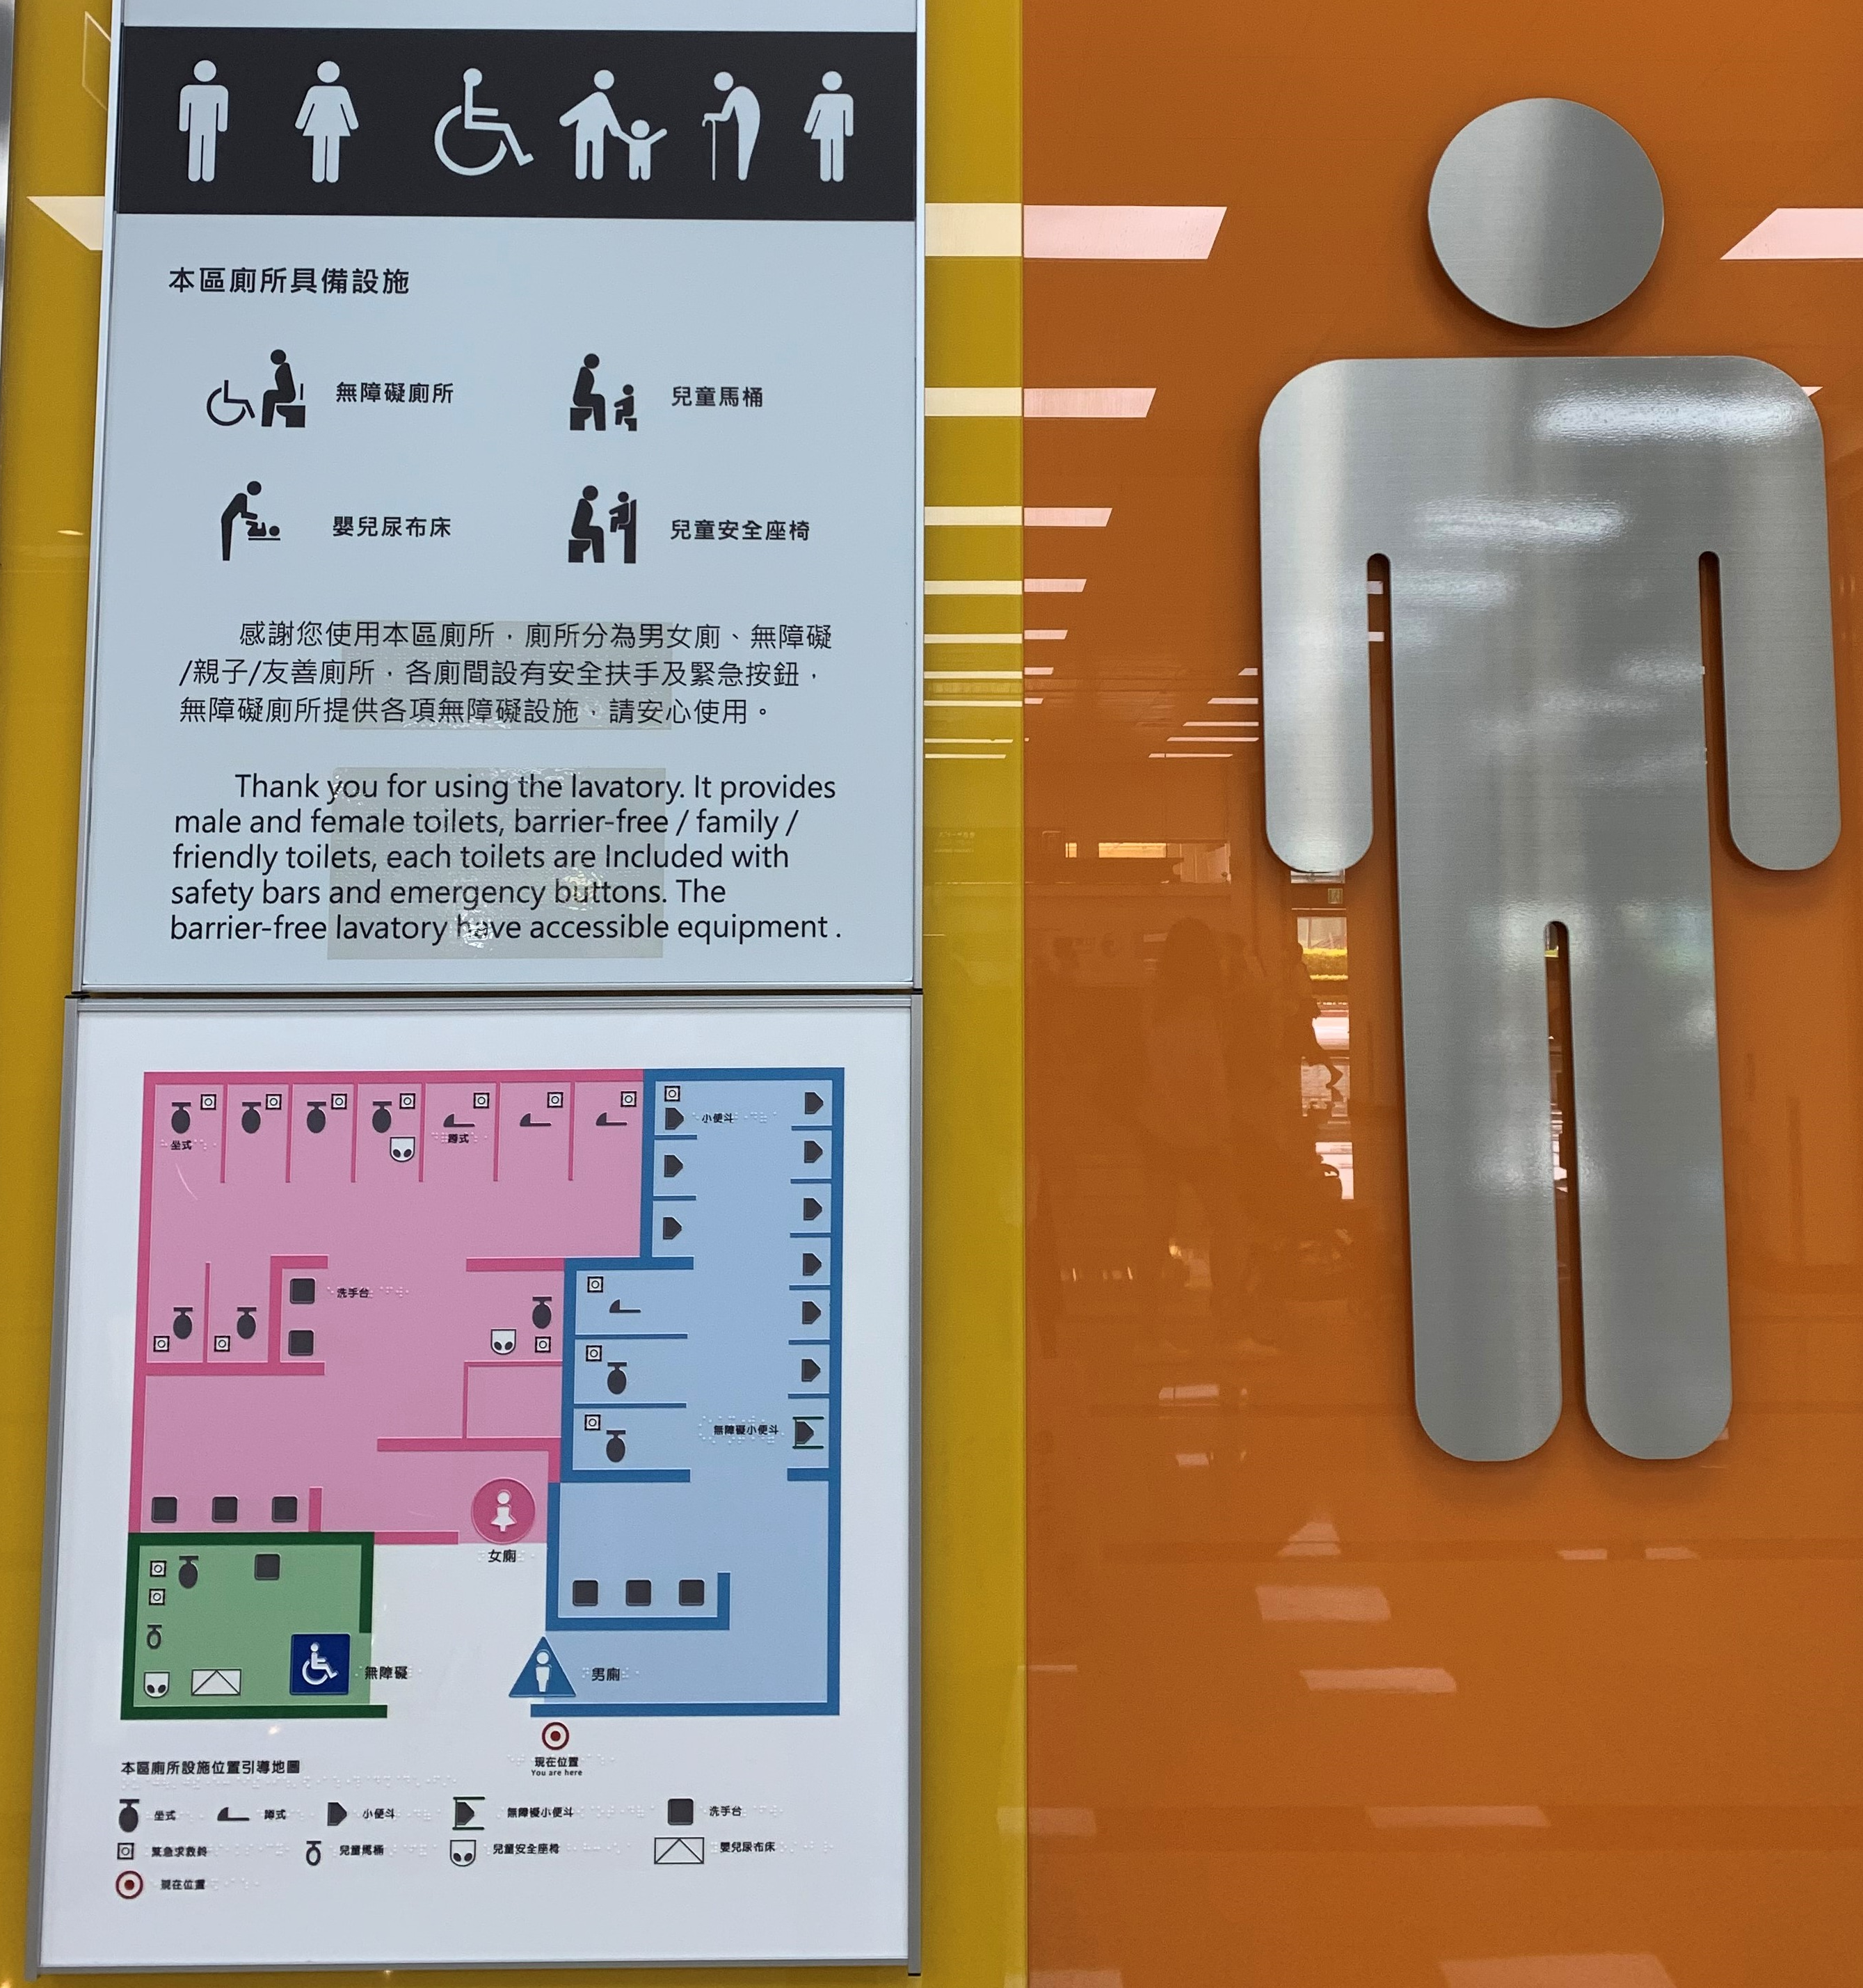 04松山機場廁所配置圖